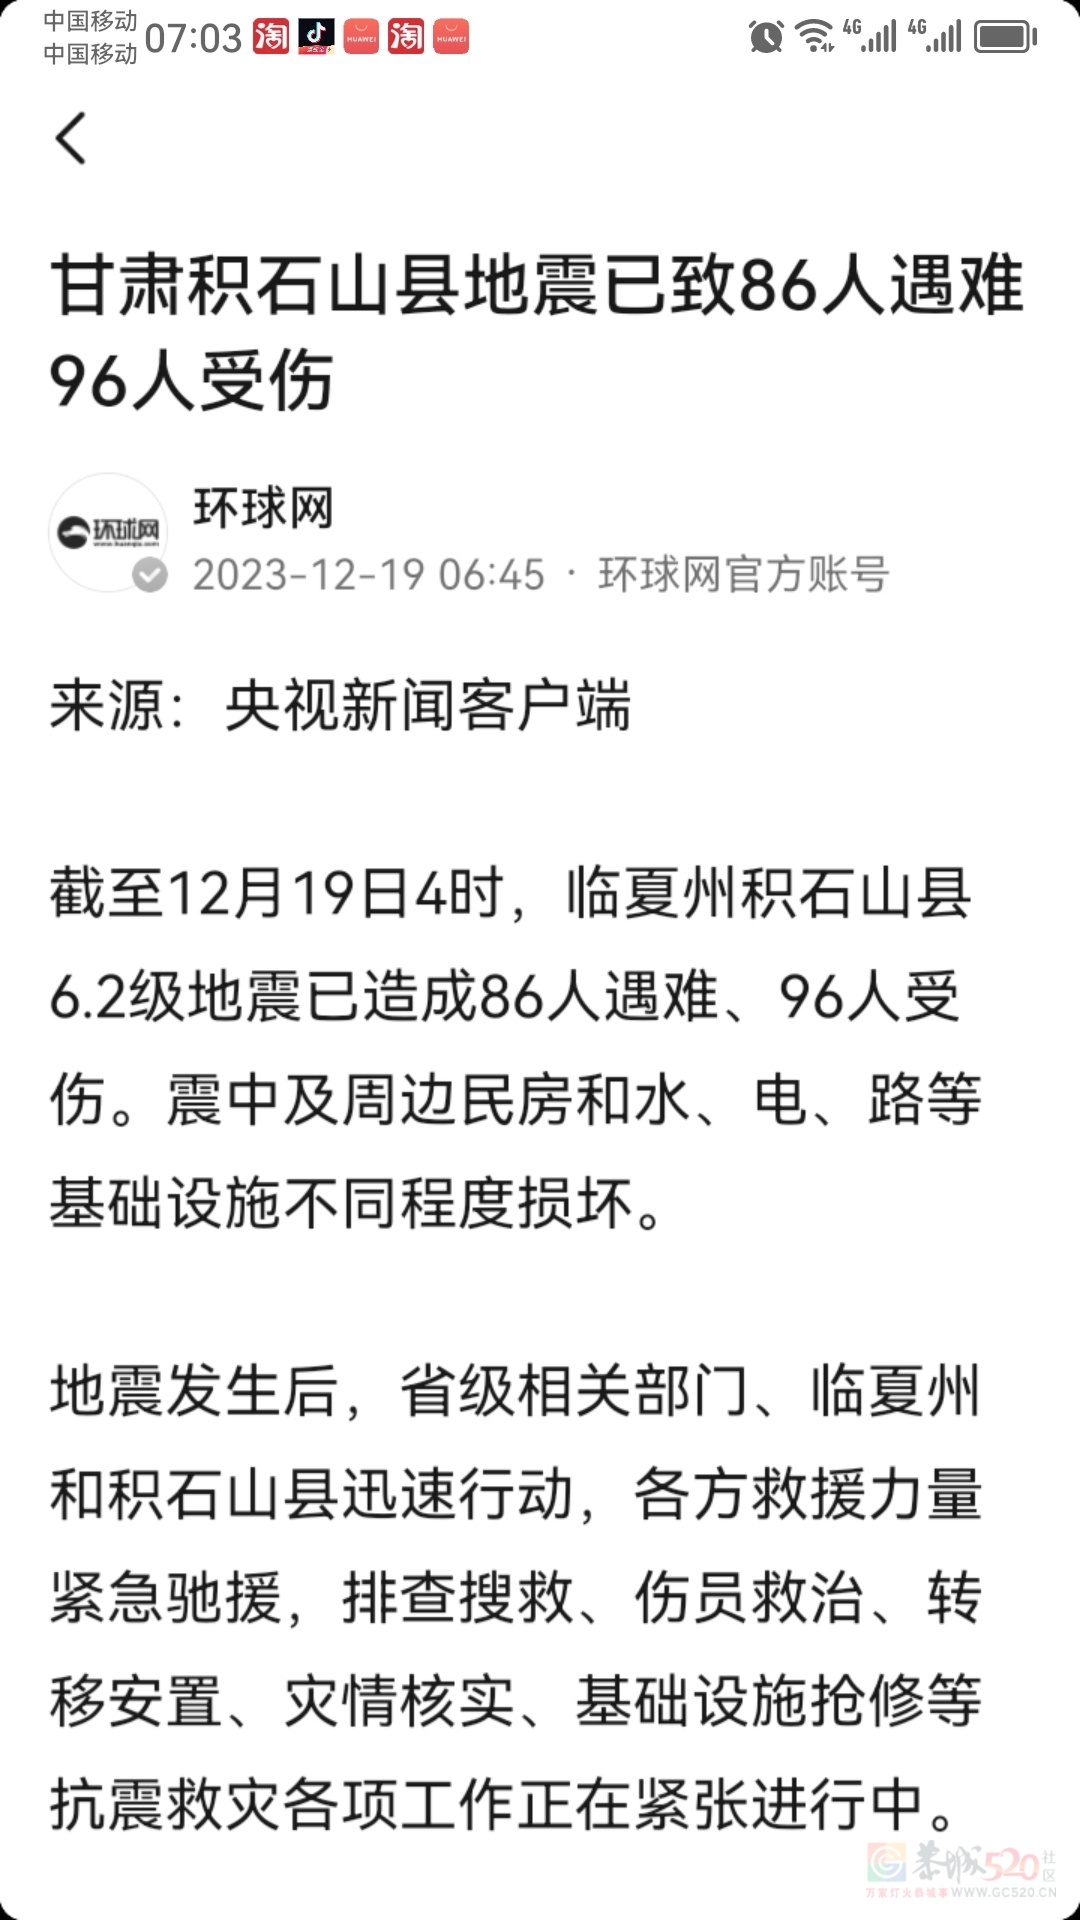 昨晚上甘肃省地震已有86人遇难326 / 作者:猛龙 / 帖子ID:312601